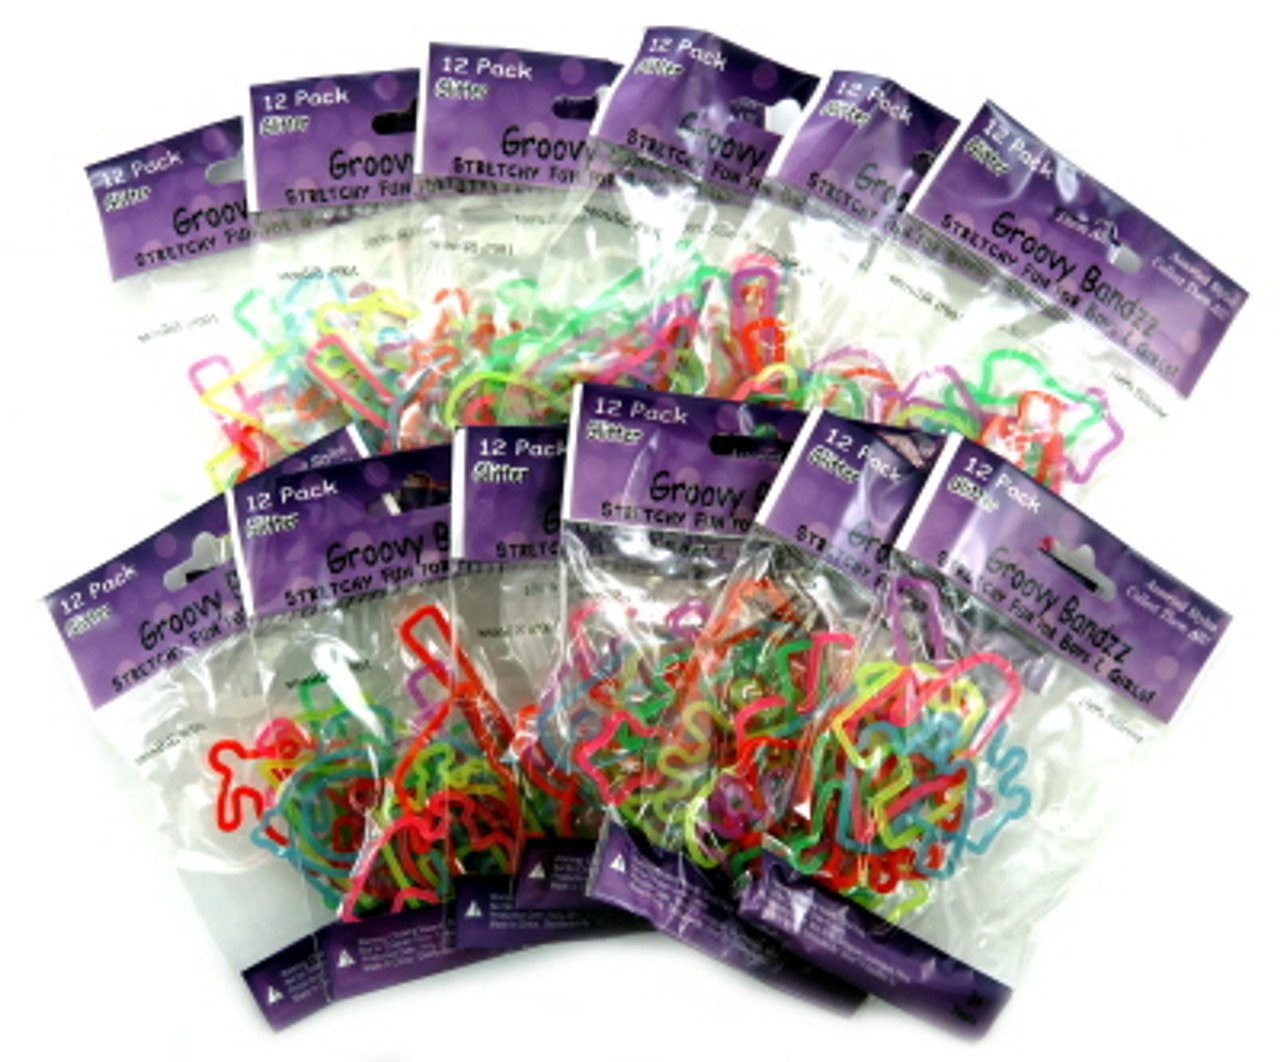 Christmas Slap Bracelets Bands Wristband Bracelets Party Favors Wholesale -  Chieeon - Wholesale Toys For Resale